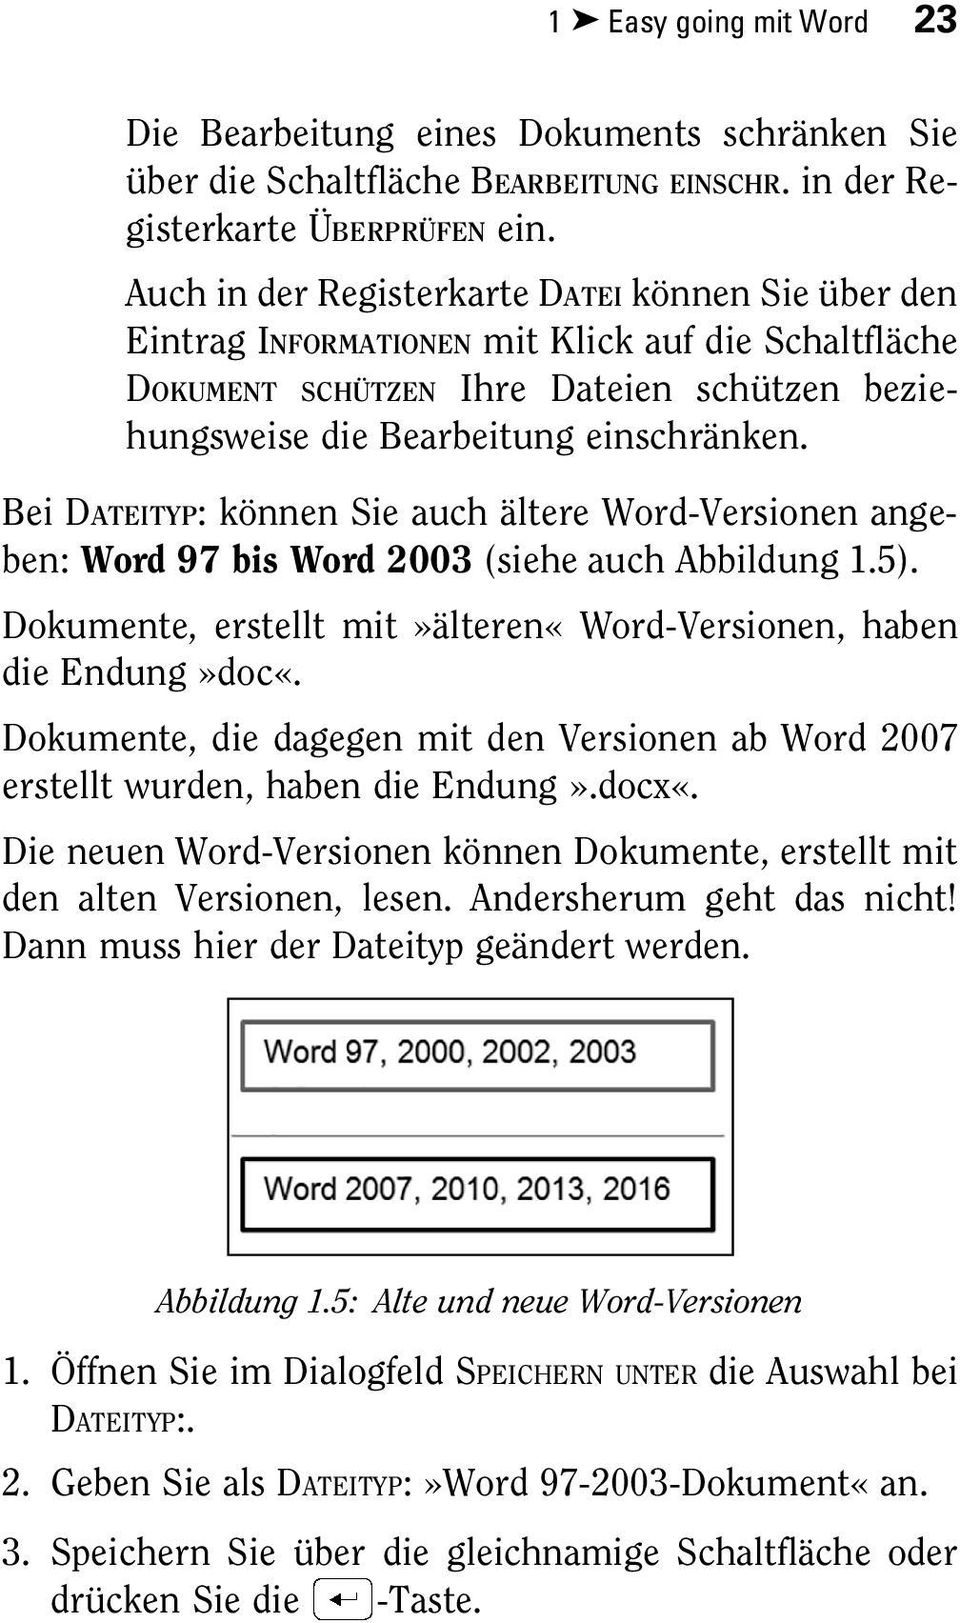 Bei DATEITYP: können Sie auch ältere Word-Versionen angeben: Word 97 bis Word 2003 (siehe auch Abbildung 1.5). Dokumente, erstellt mit»älteren«word-versionen, haben die Endung»doc«.